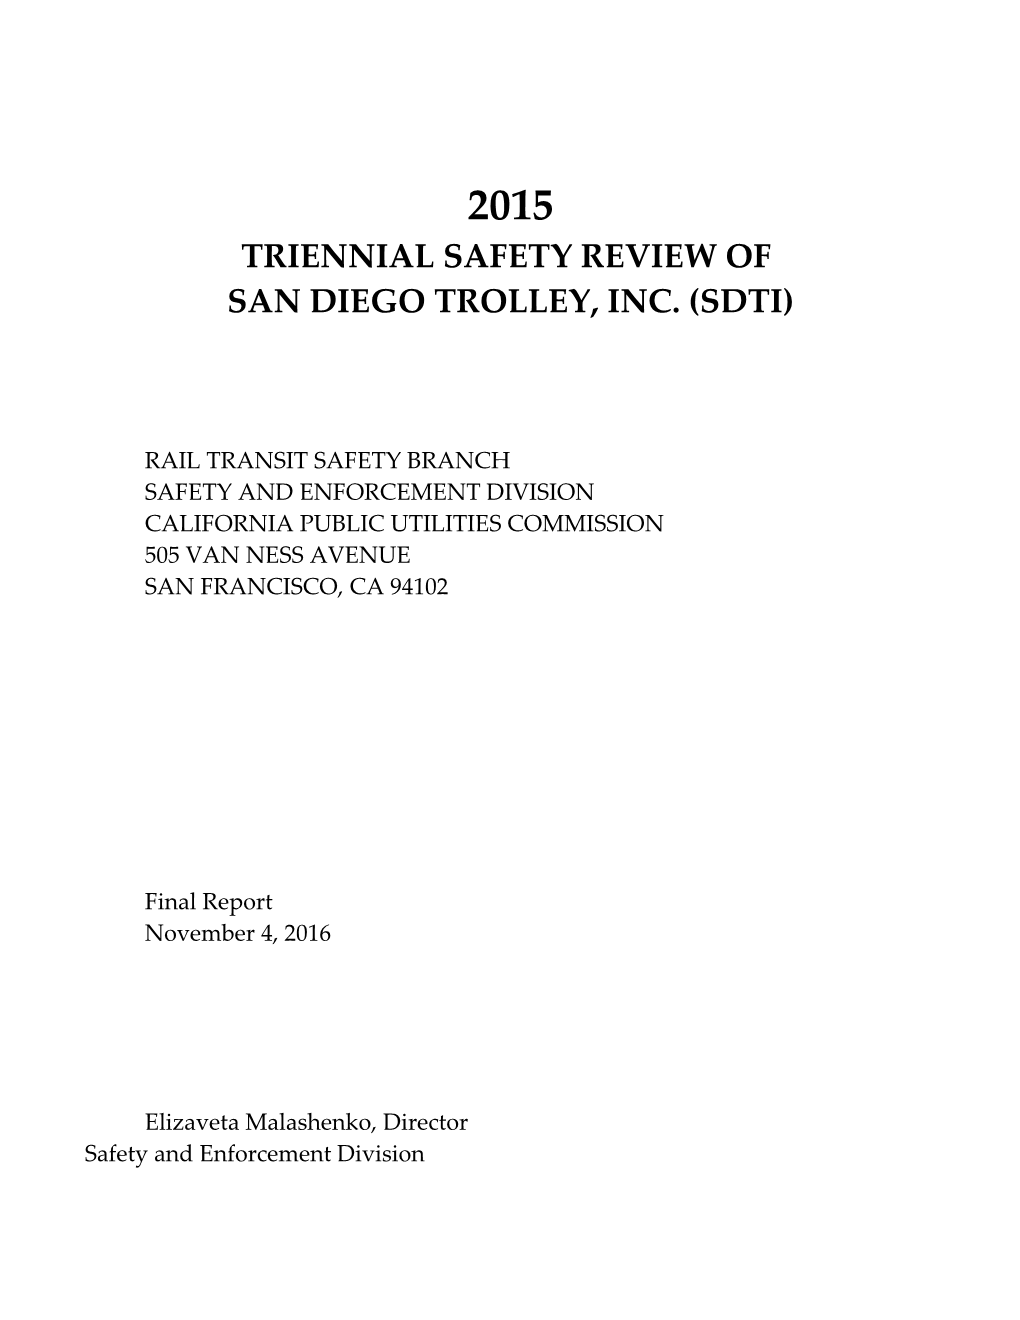 San Diego Trolley, Inc. (Sdti)